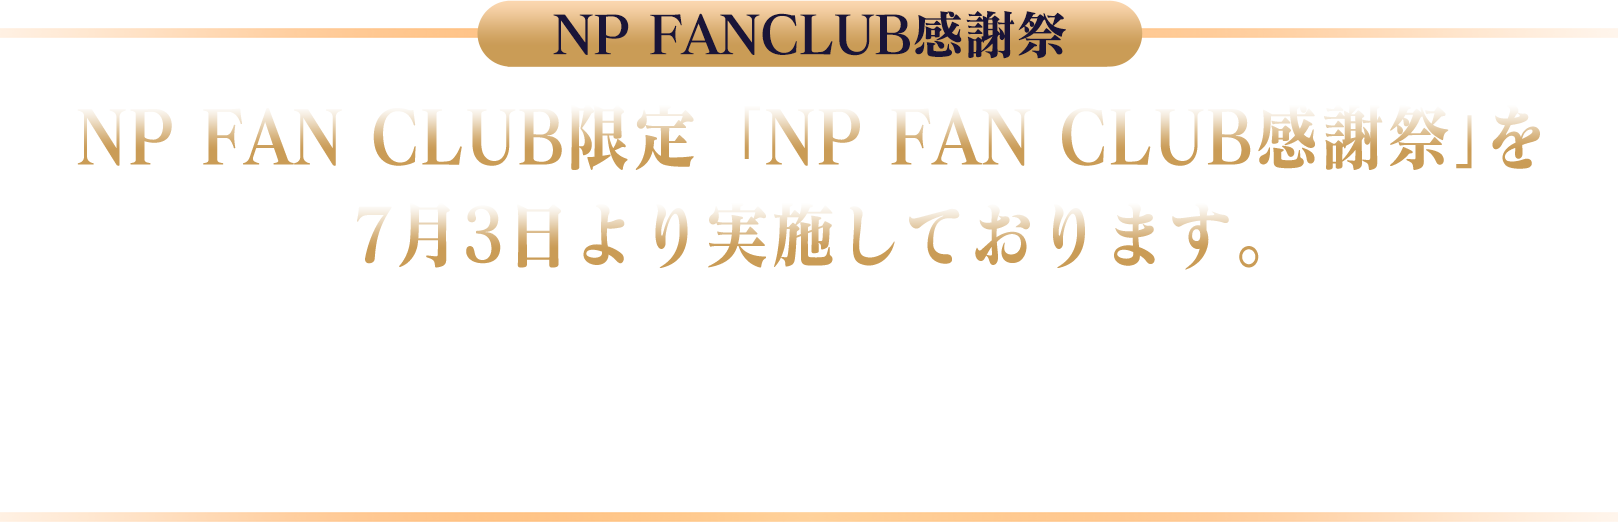 NP FAN CLUB限定「NP FAN CLUB感謝祭」を7月3日より実施しております。